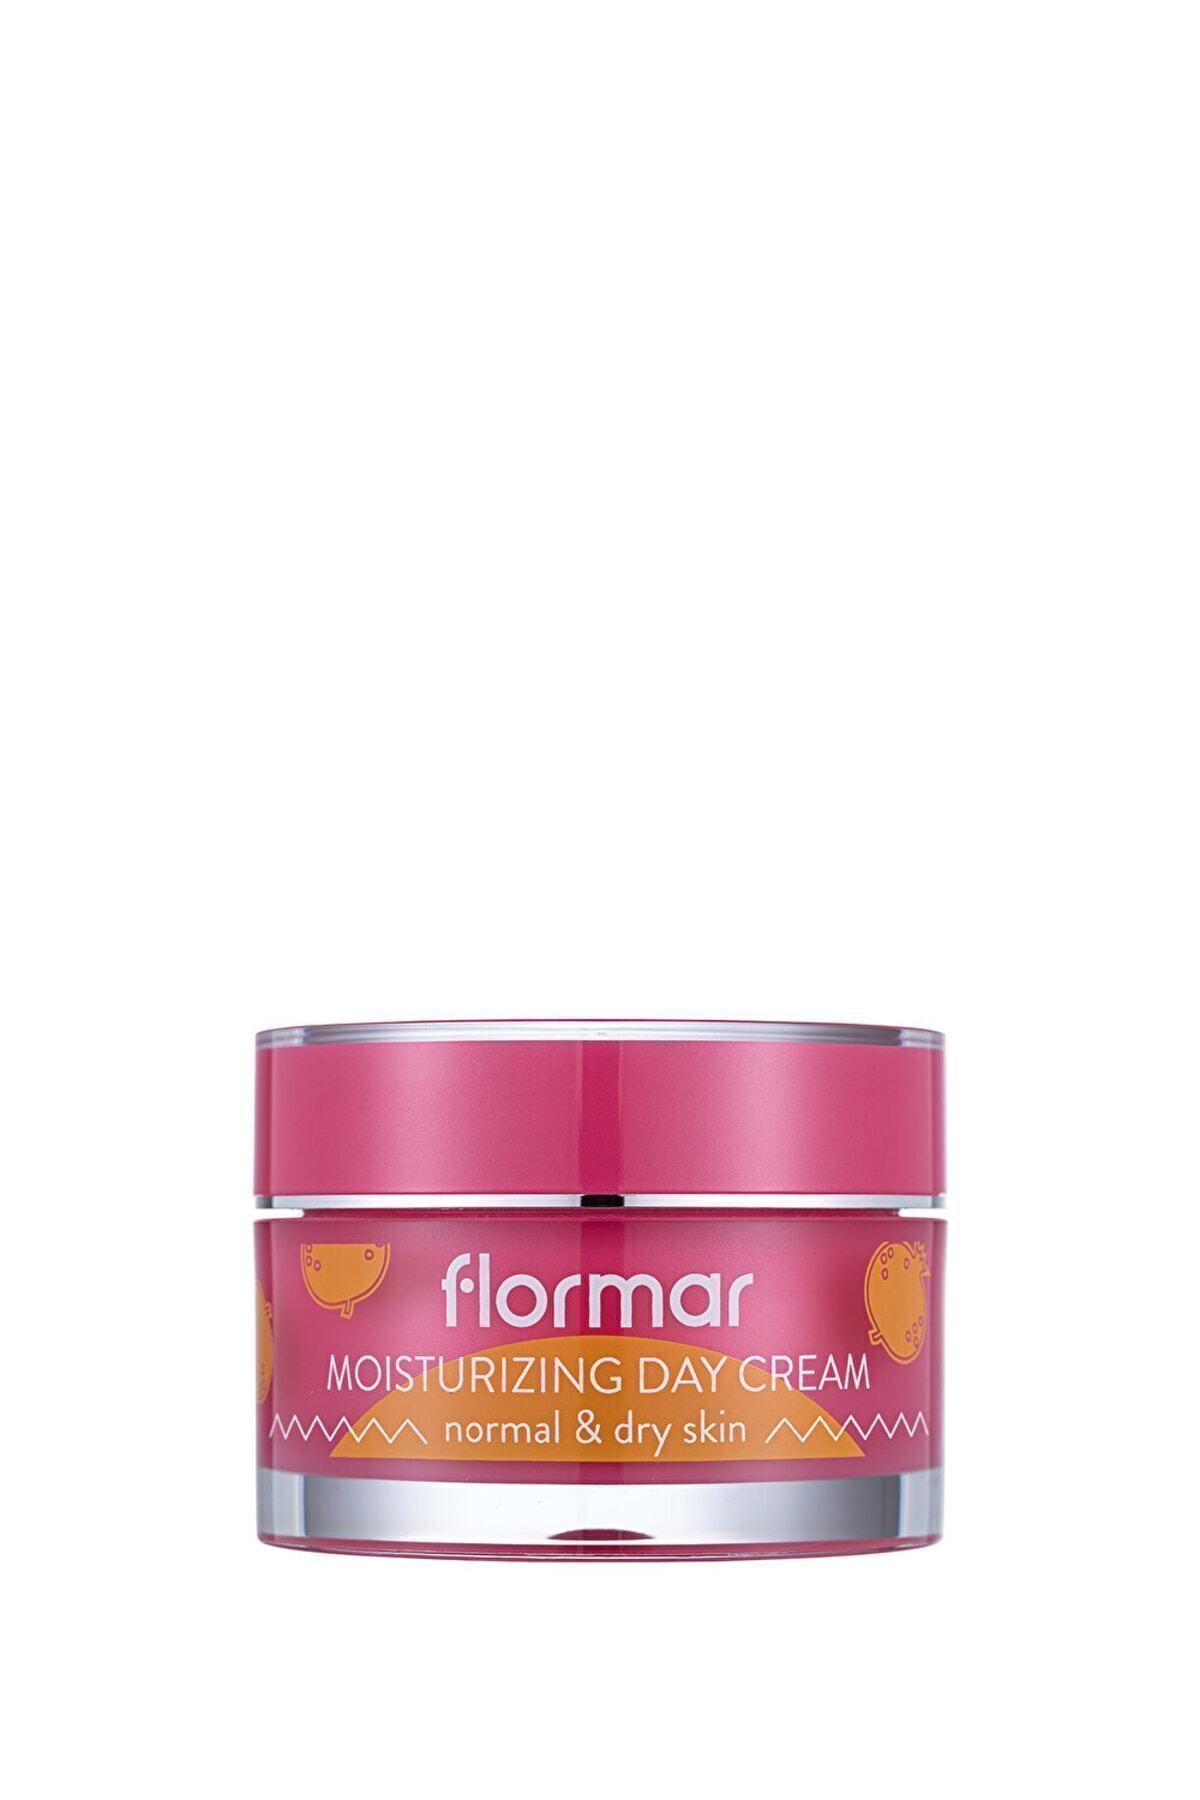 Flormar Yüz Nemlendirici Krem Moisturizing Day Cream 001 Normal&dry Skin 36000003-001